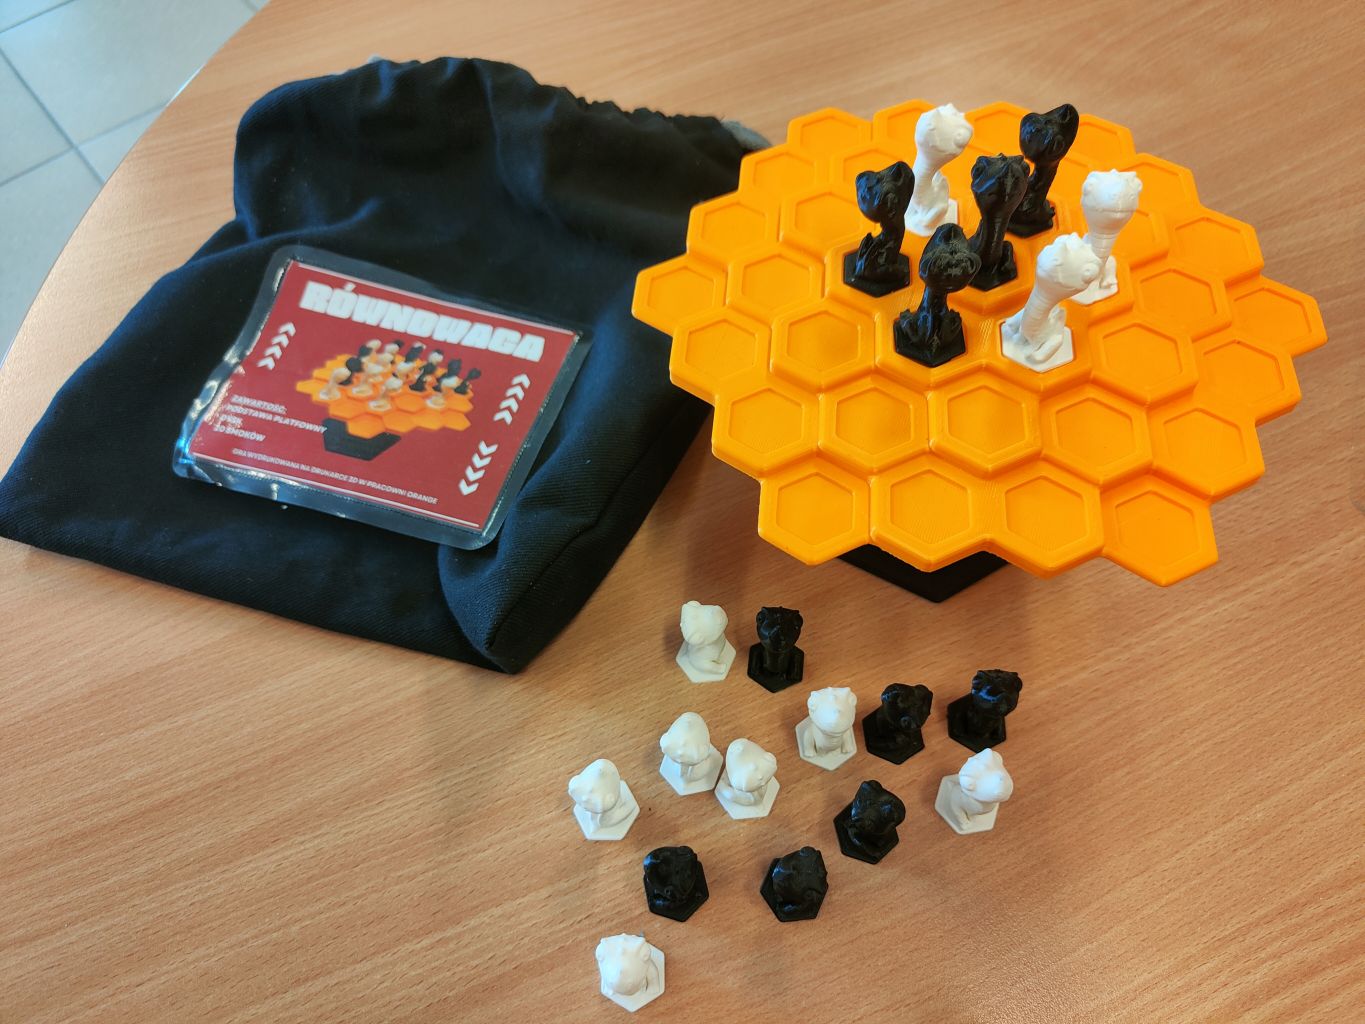 gra planszowa Równowaga - pomarańczowa platforma na podstawce, czarne i białe pionki oraz torba na wszystkie elementy